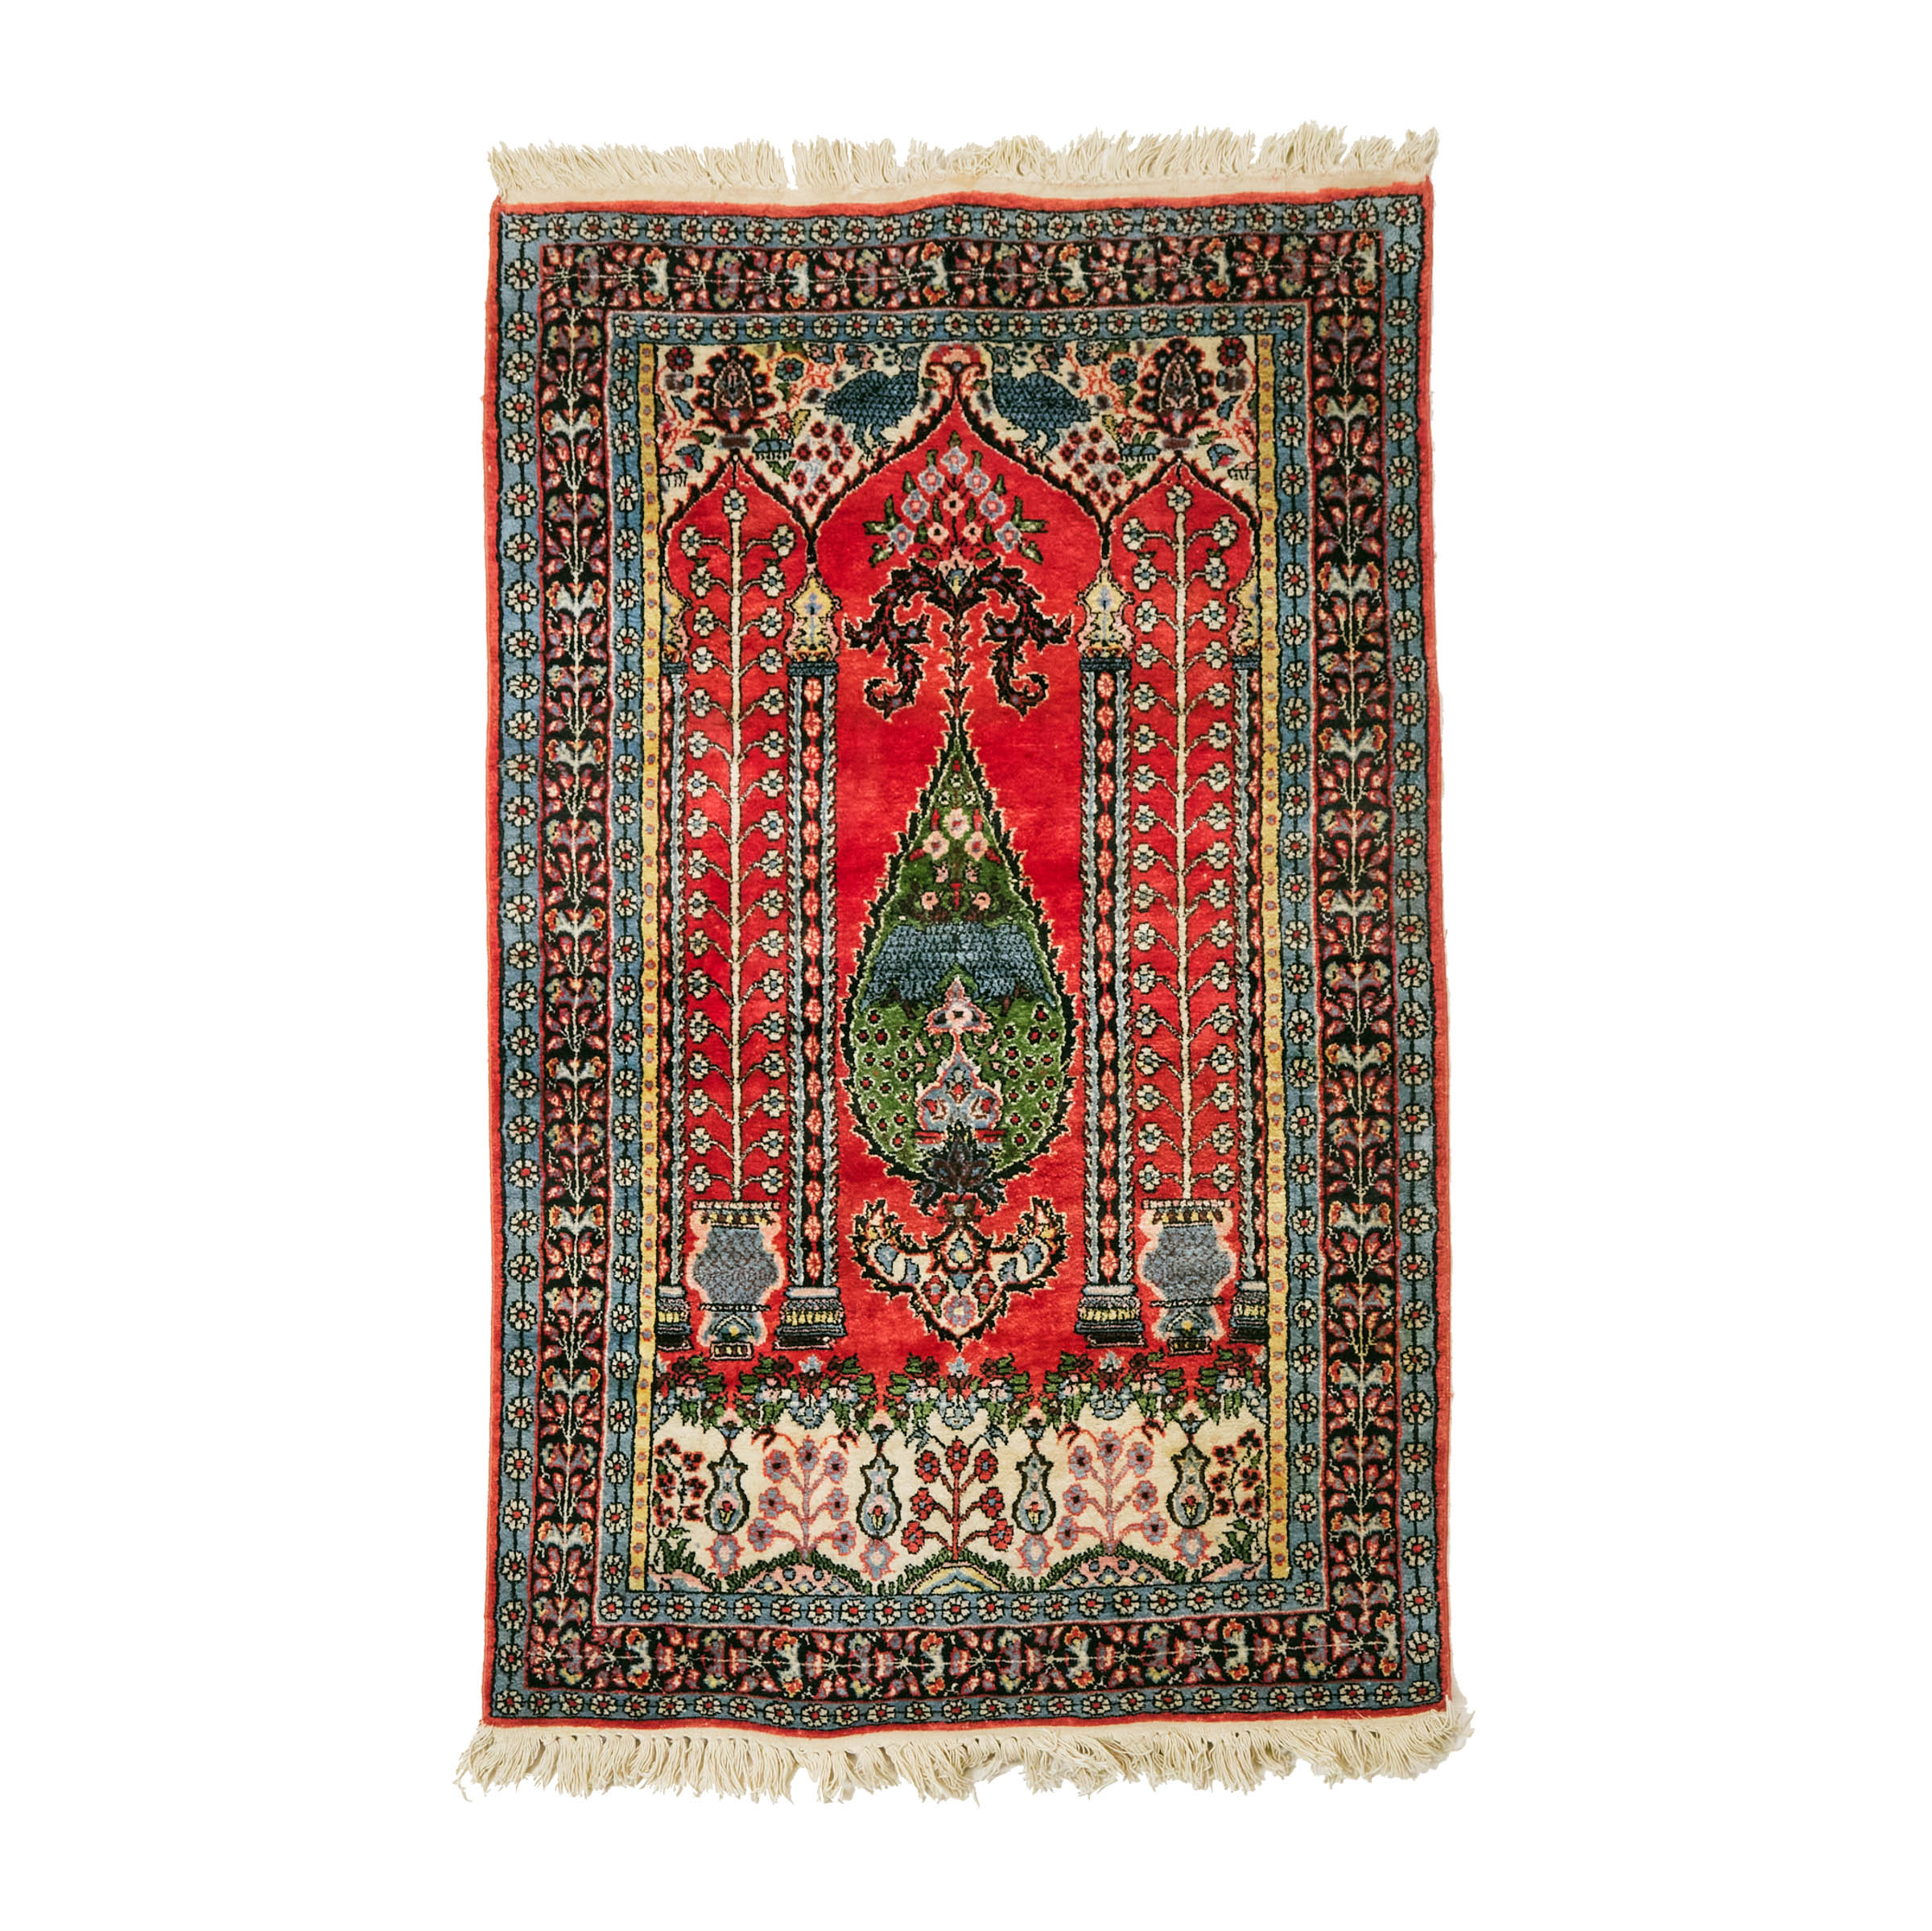 Indian Kashmir (Mercerized Cotton) Prayer Rug, c.1960/70